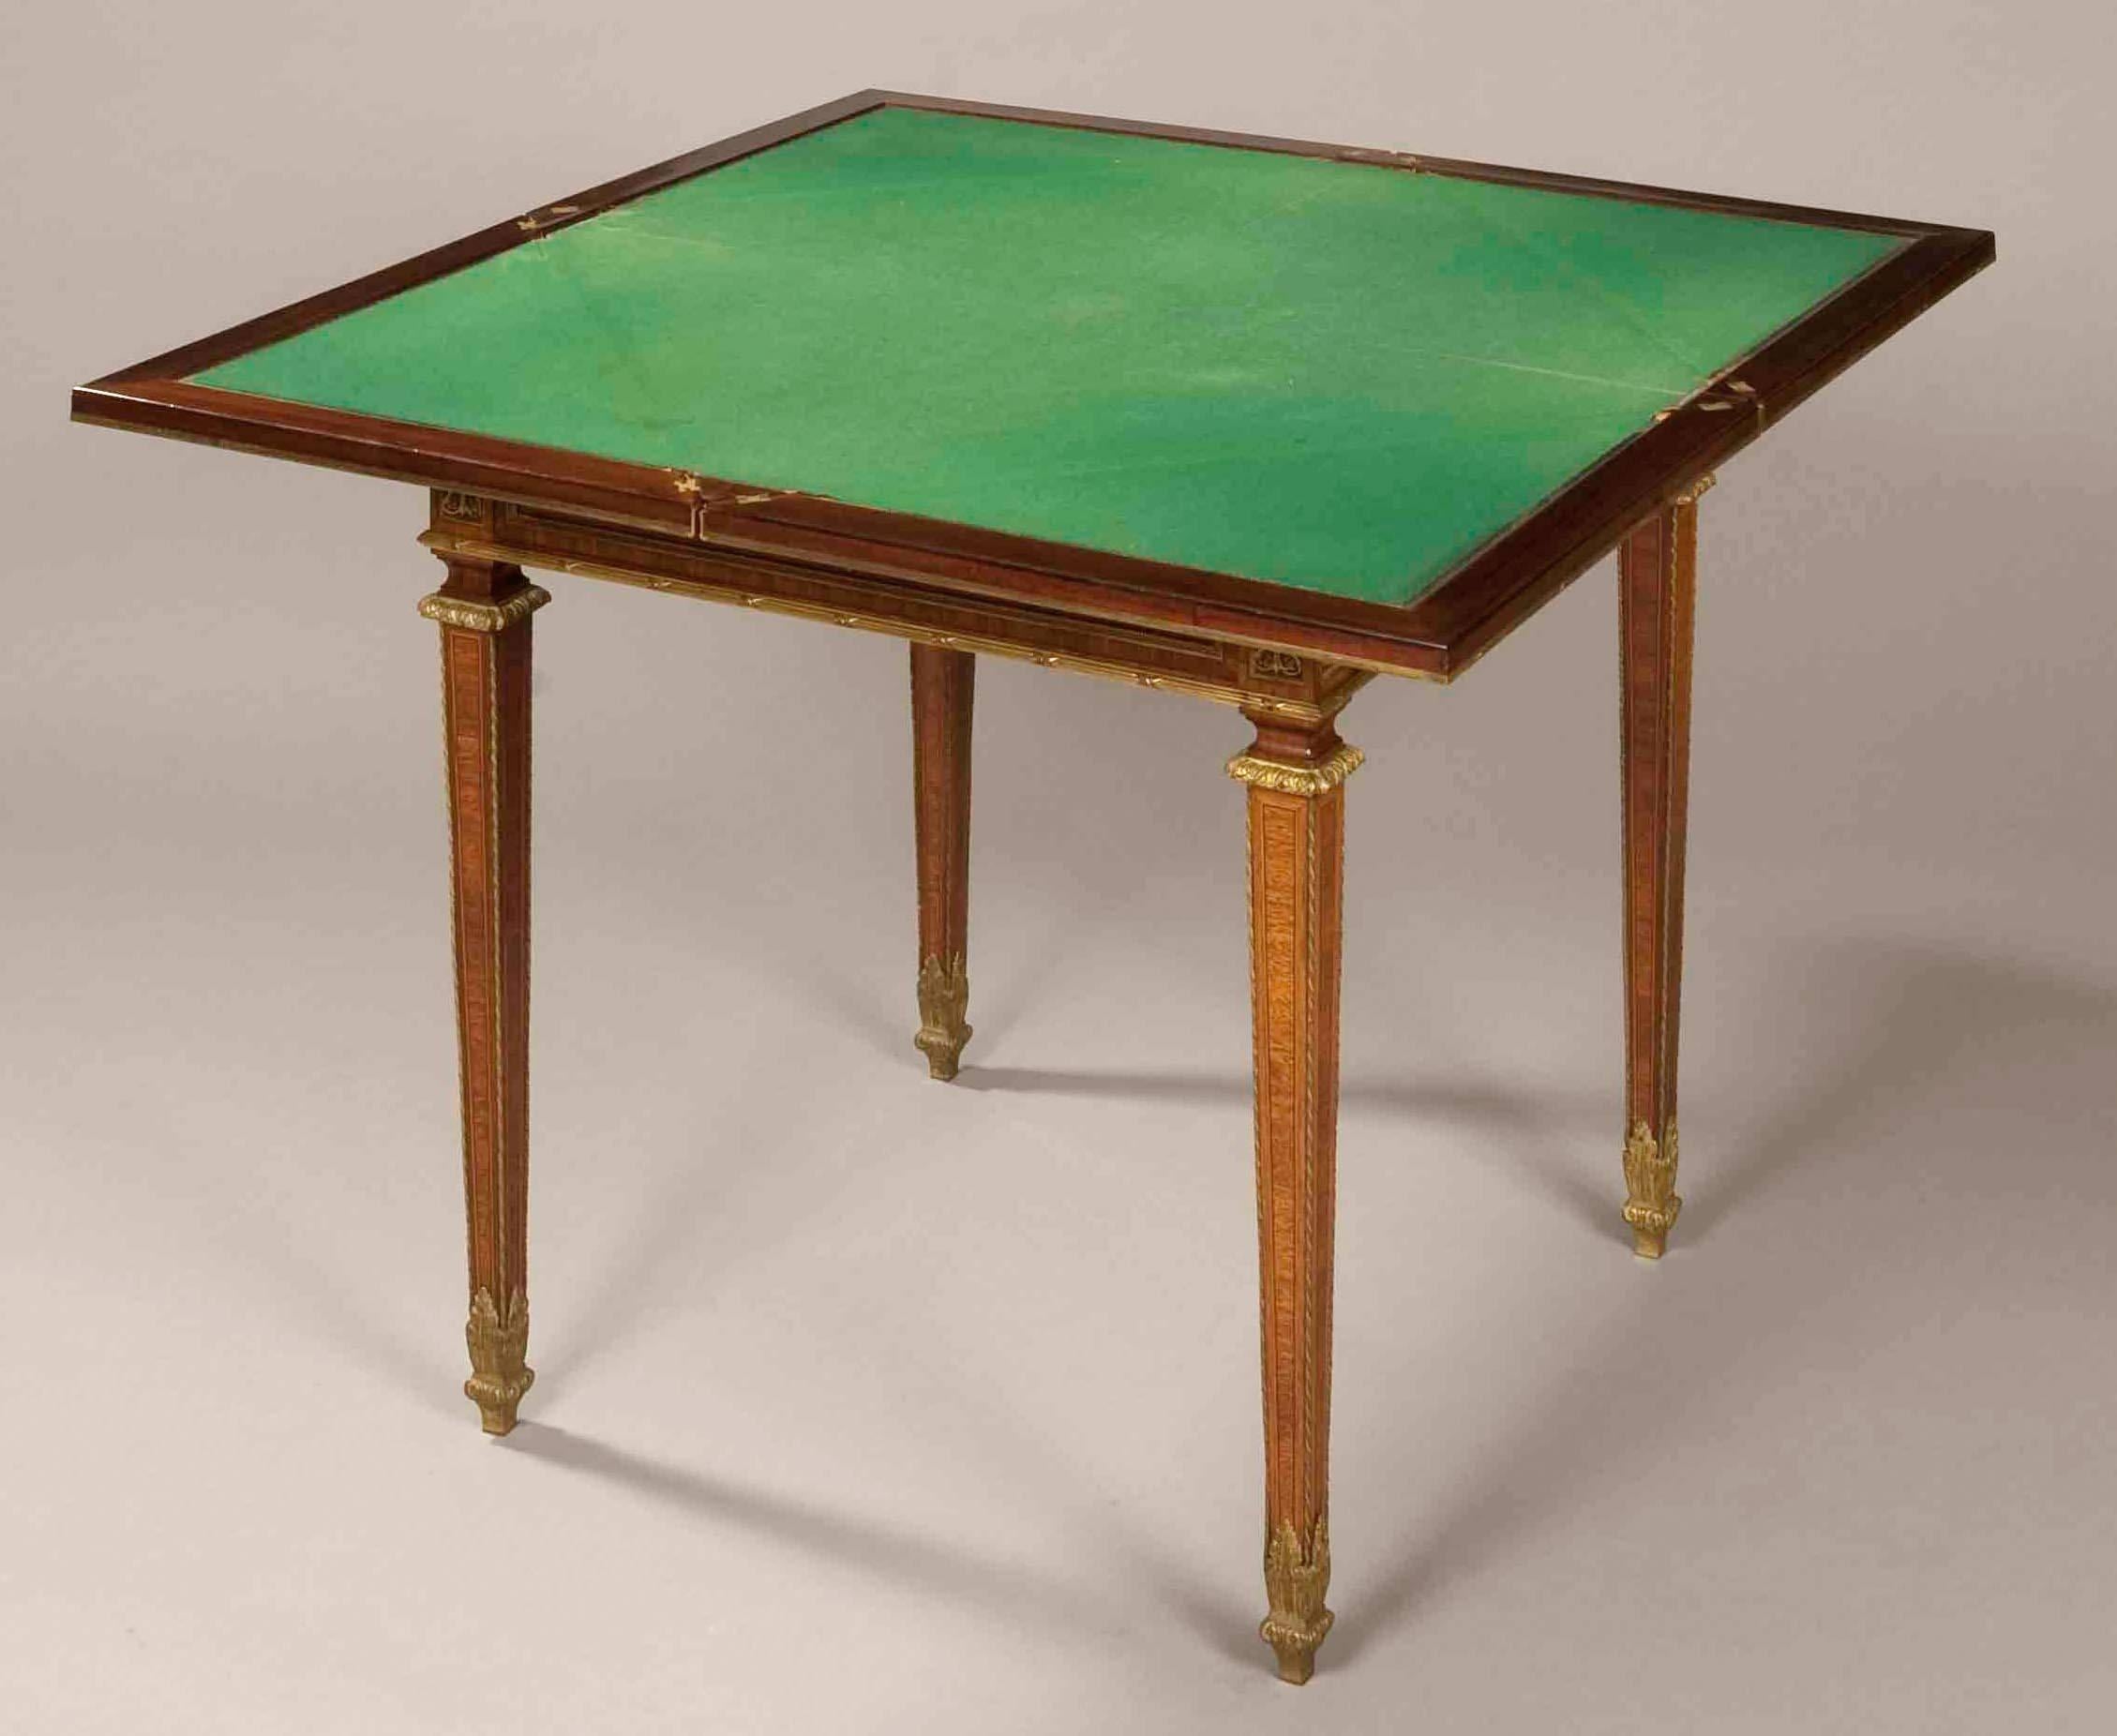 Ein schöner Kartentisch in der Louis XVI-Manier.

Konstruiert in Königsholz mit Purpurherz Querband, und gekleidet mit hervorragend gegossen und ziseliert Quecksilber vergoldet Bronze Beschläge; steigt von spitz zulaufenden Beinen, mit Bronze